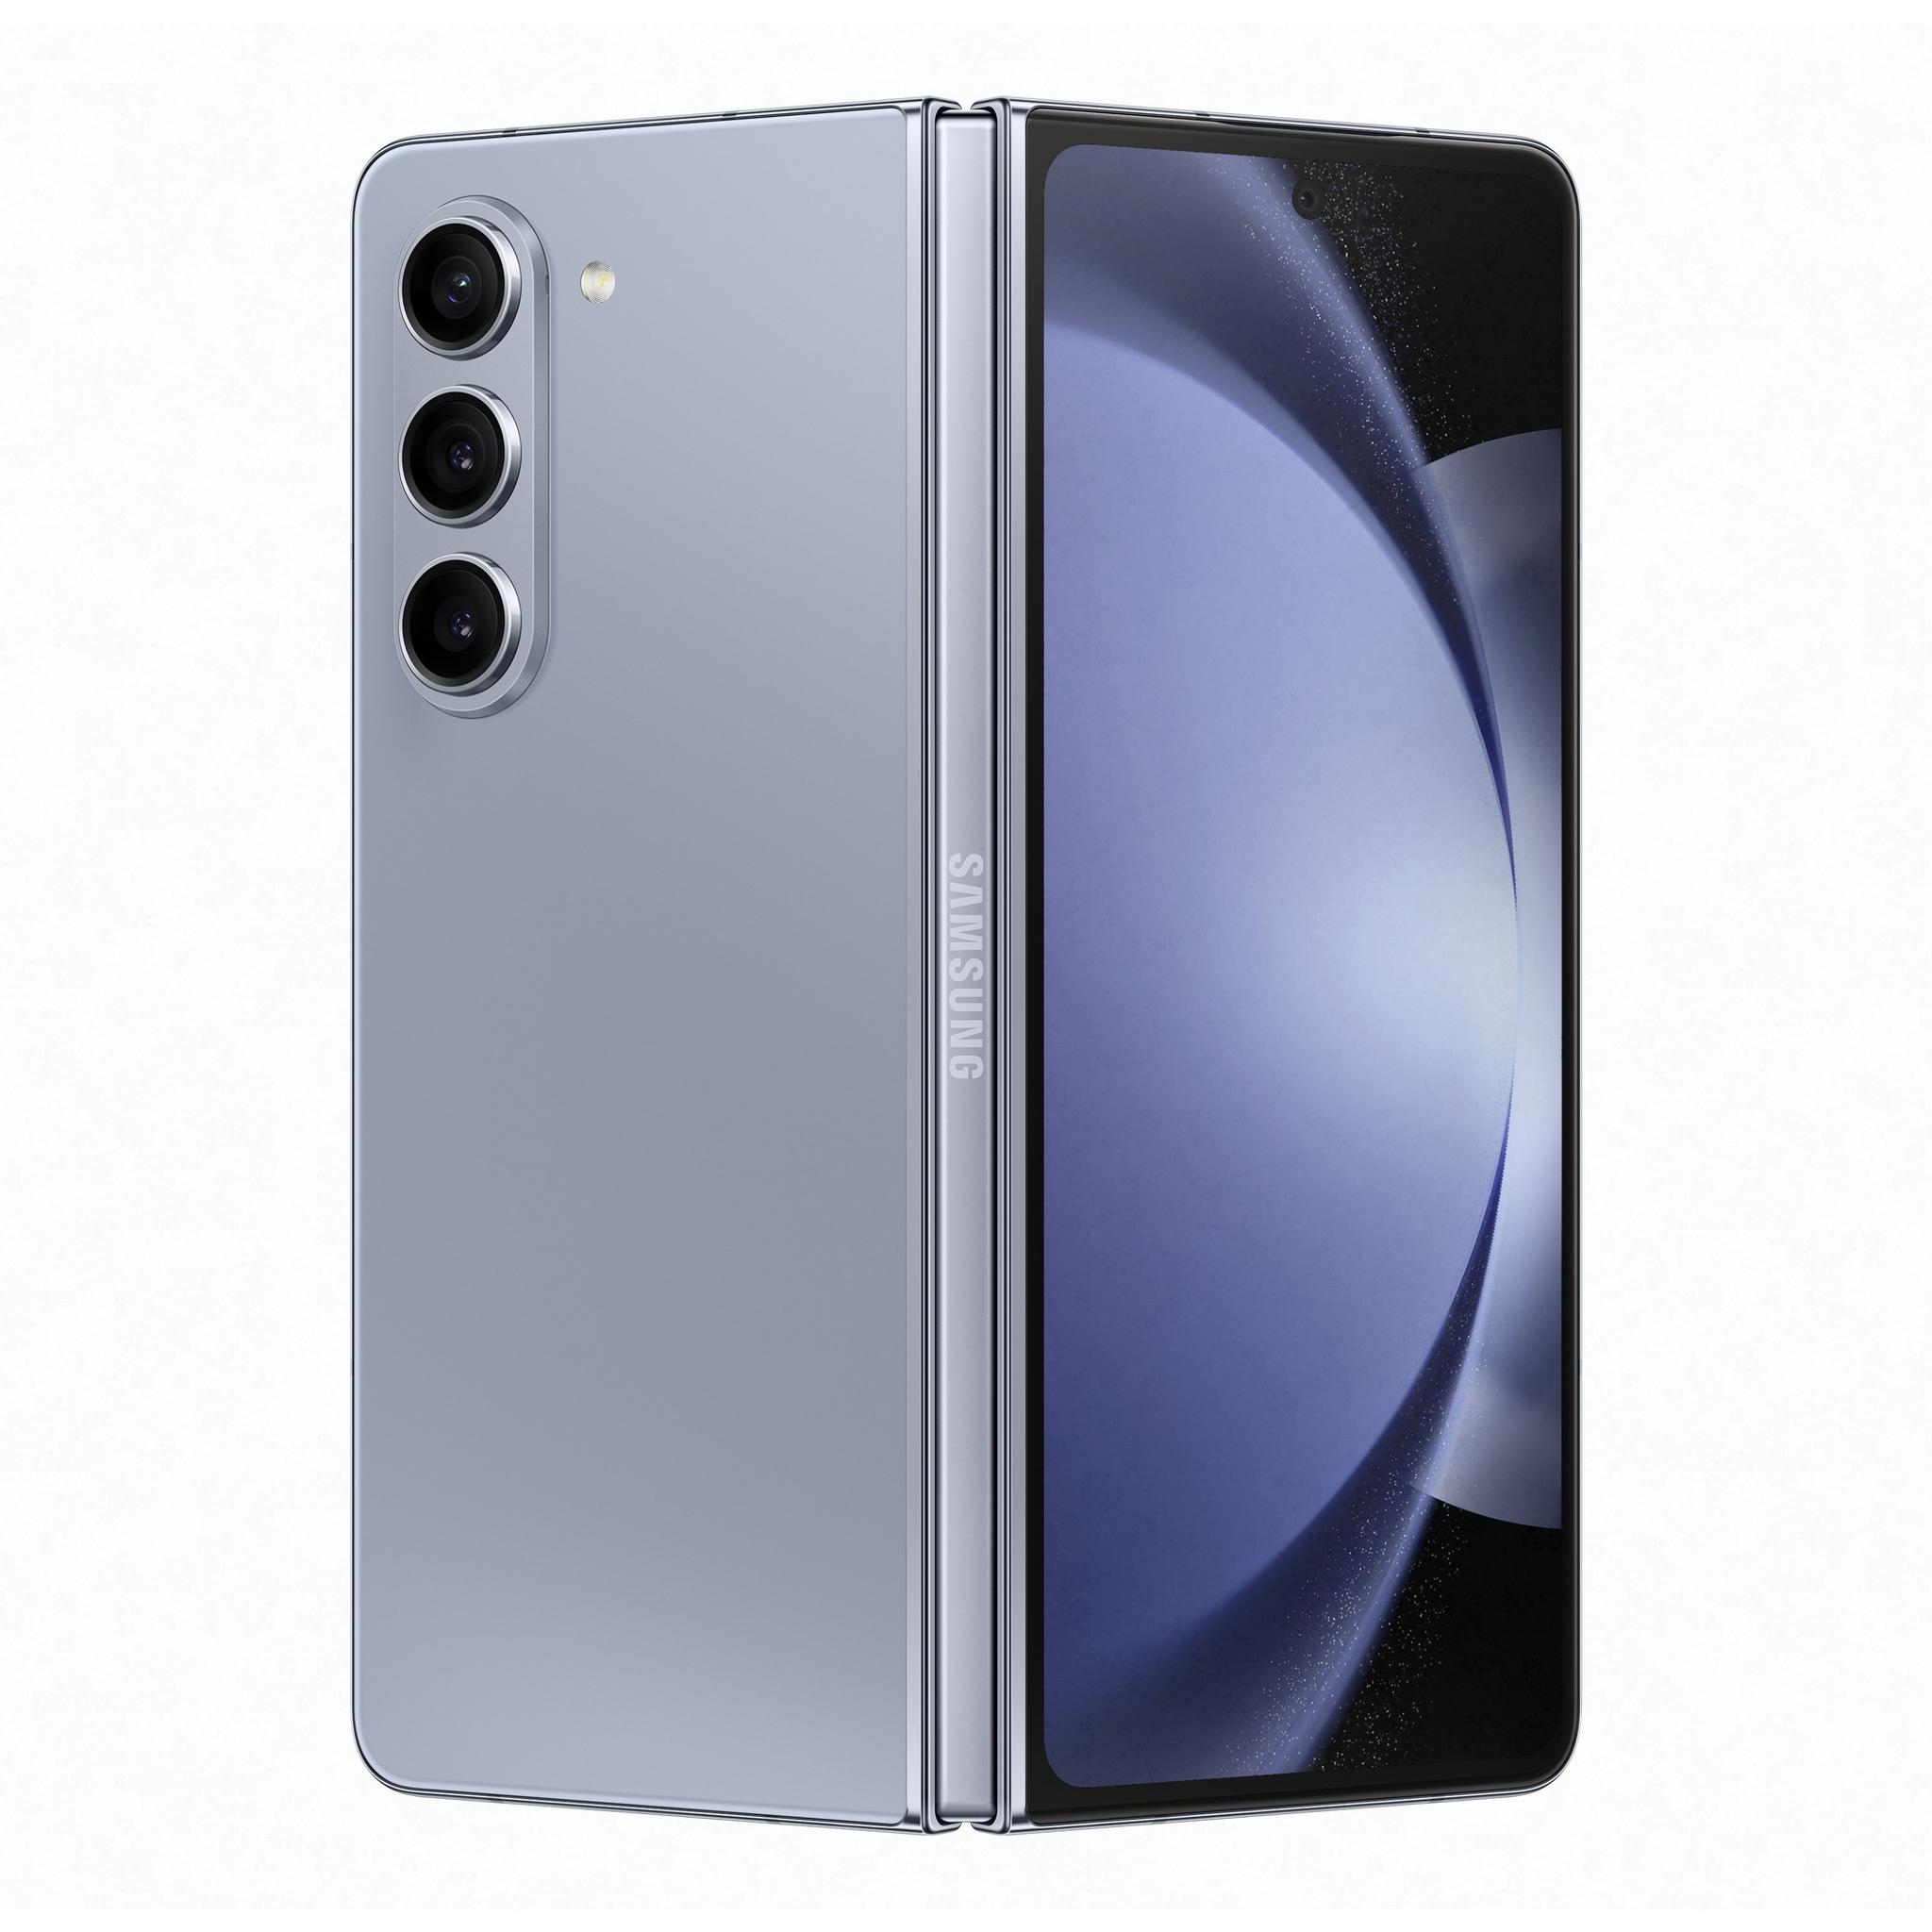 Samsung Galaxy Z Fold5 7.6-inch, 12GB RAM, 512GB, 5G Phone - Icy Blue